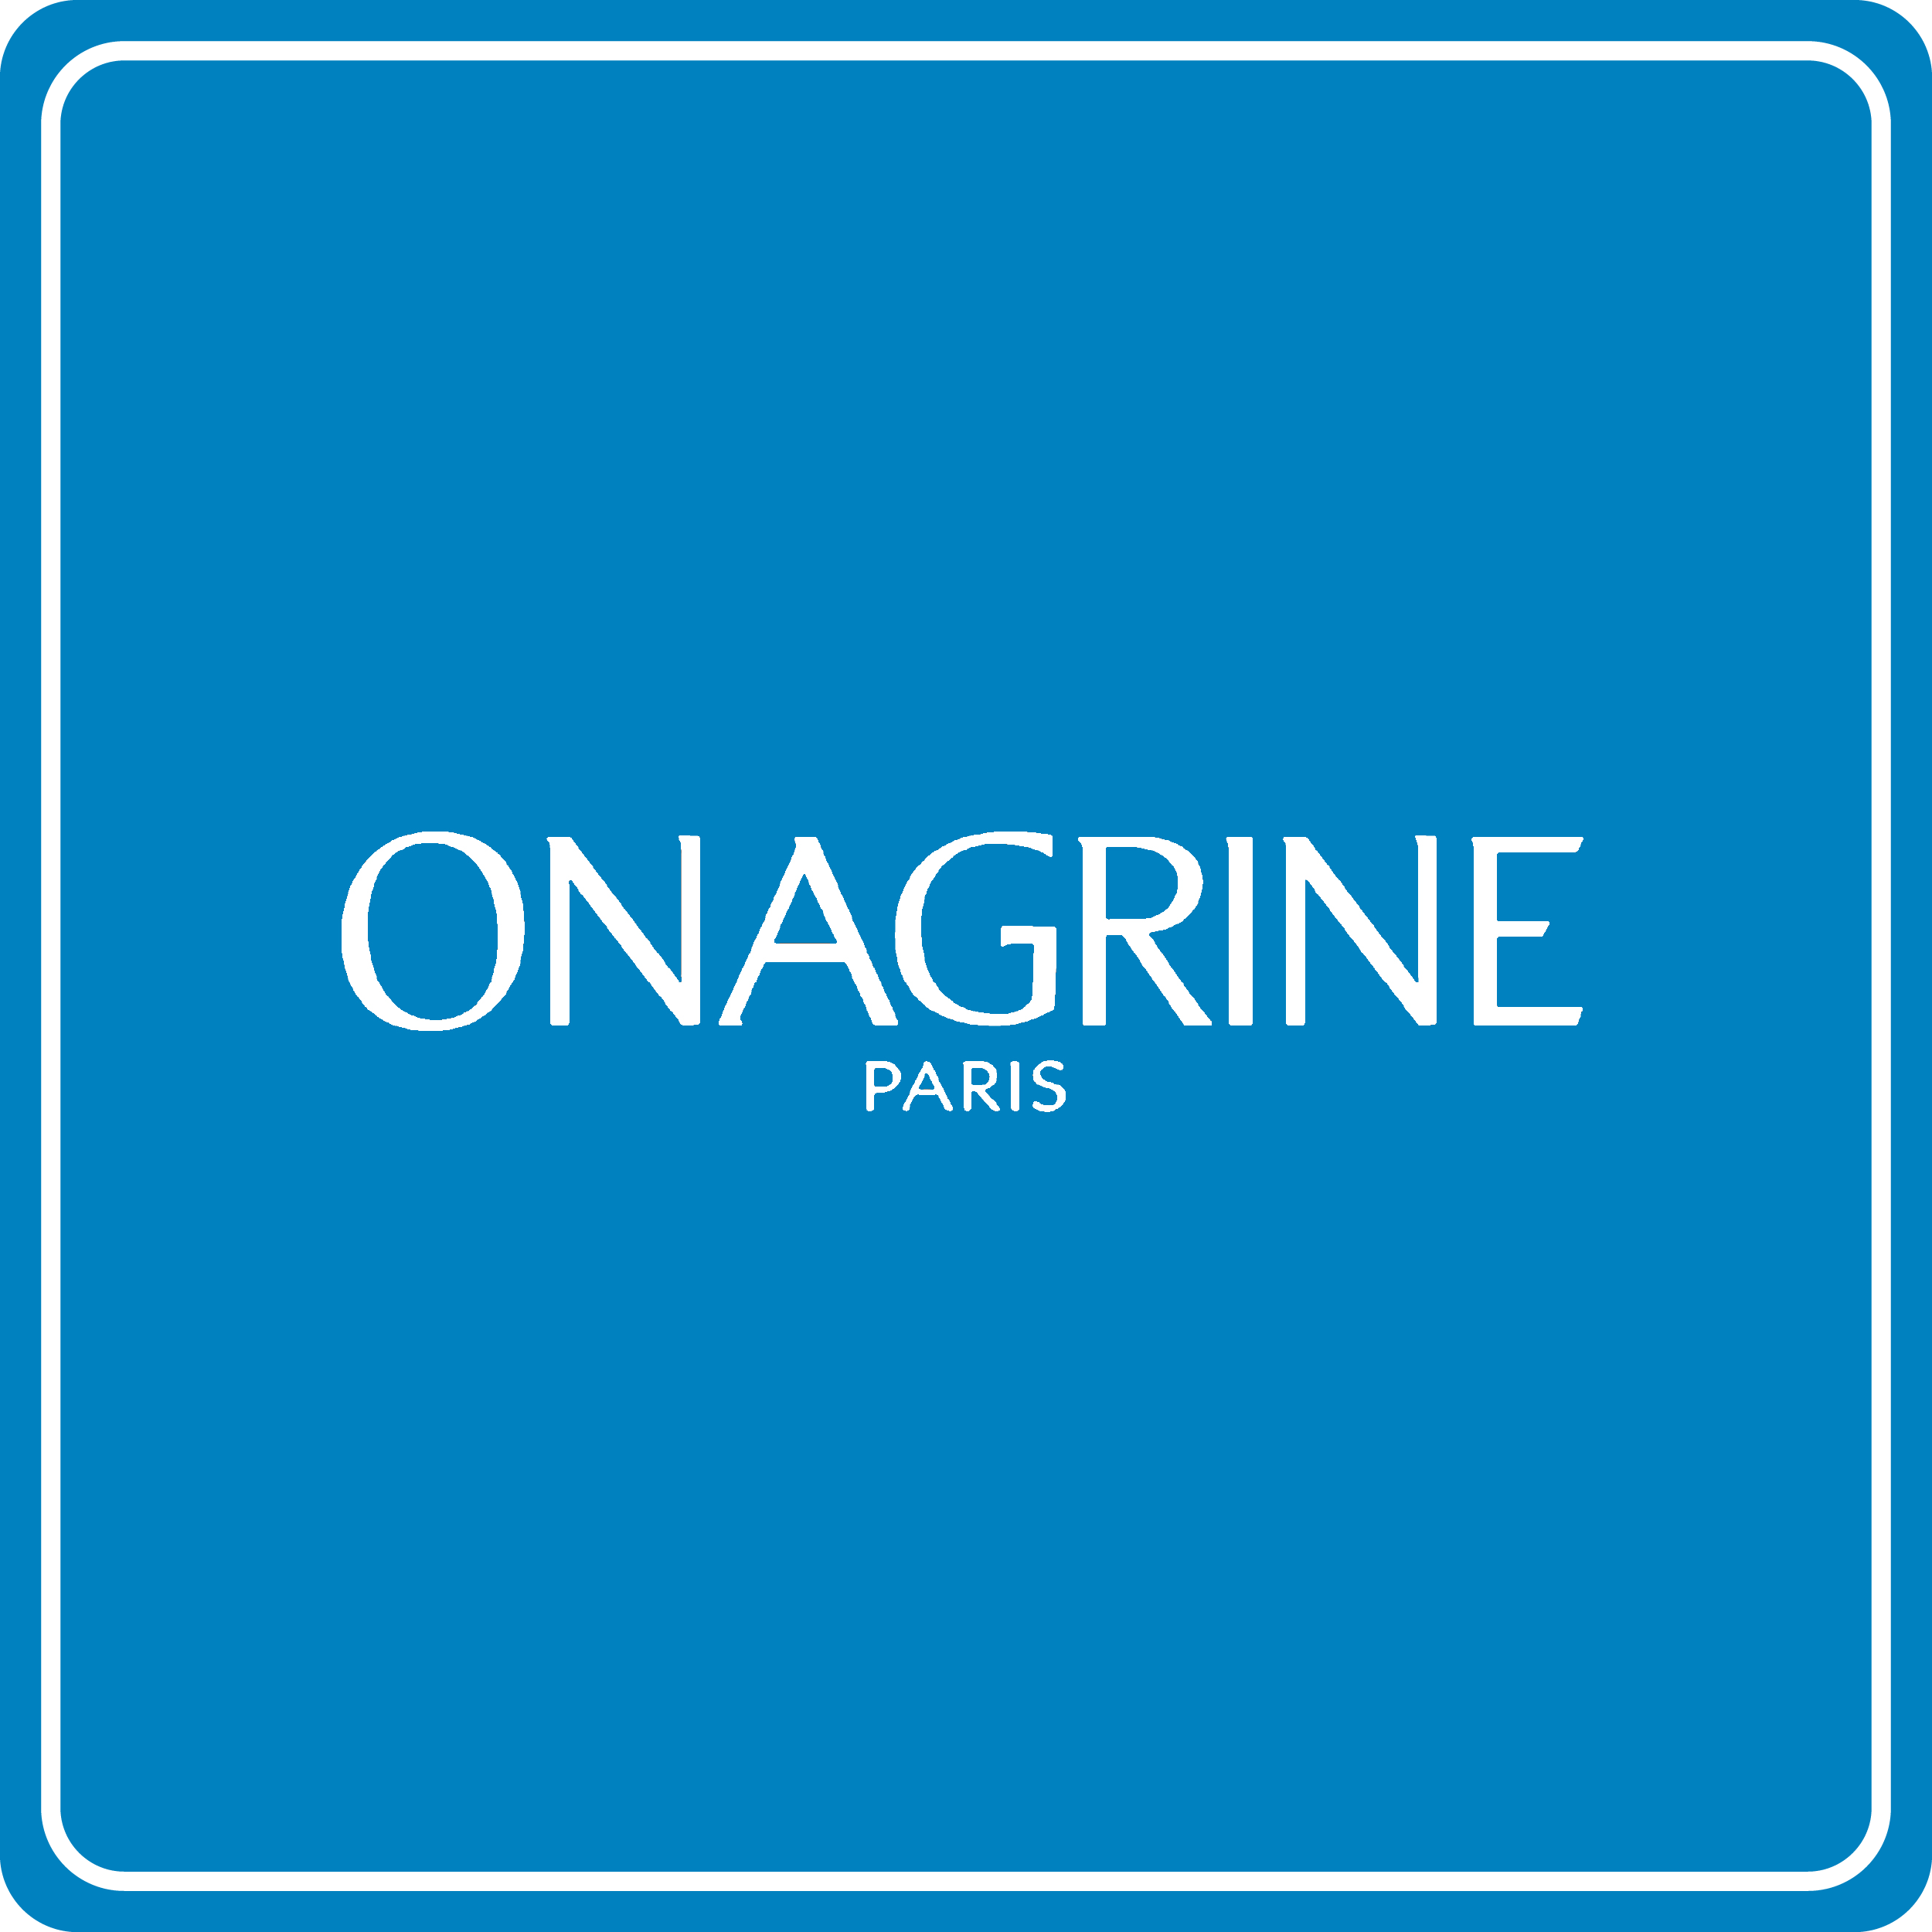 ONAGRINE